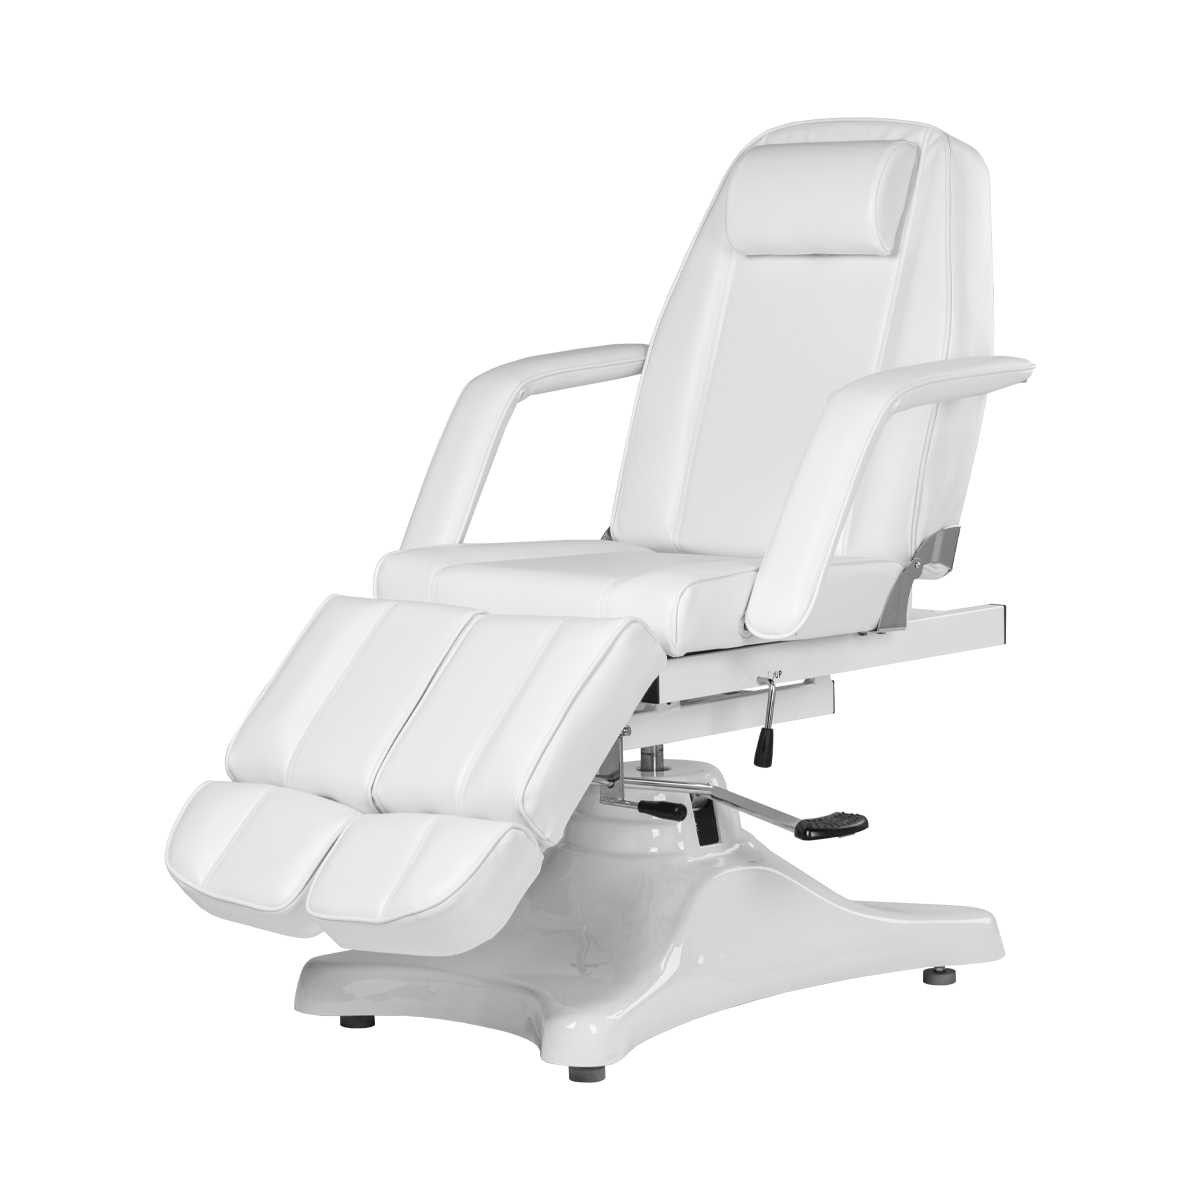 Педикюрное кресло МД-823А, гидравлика - 2 